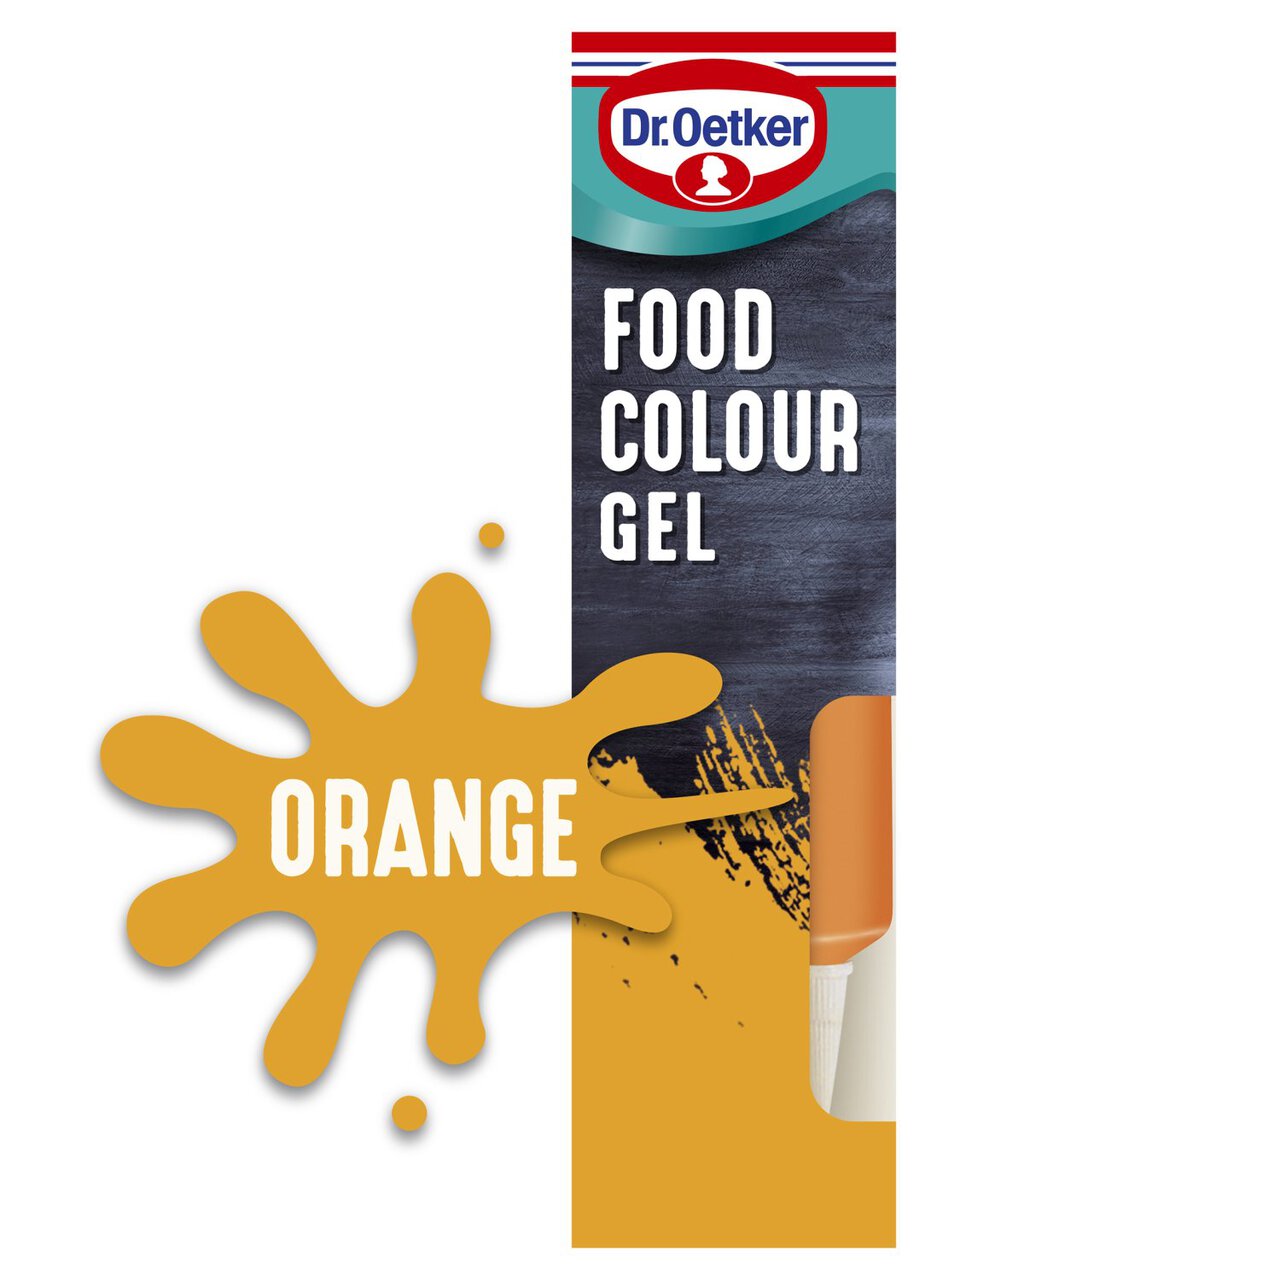 Dr. Oetker Extra Strong Orange Food Colouring Gel 15g